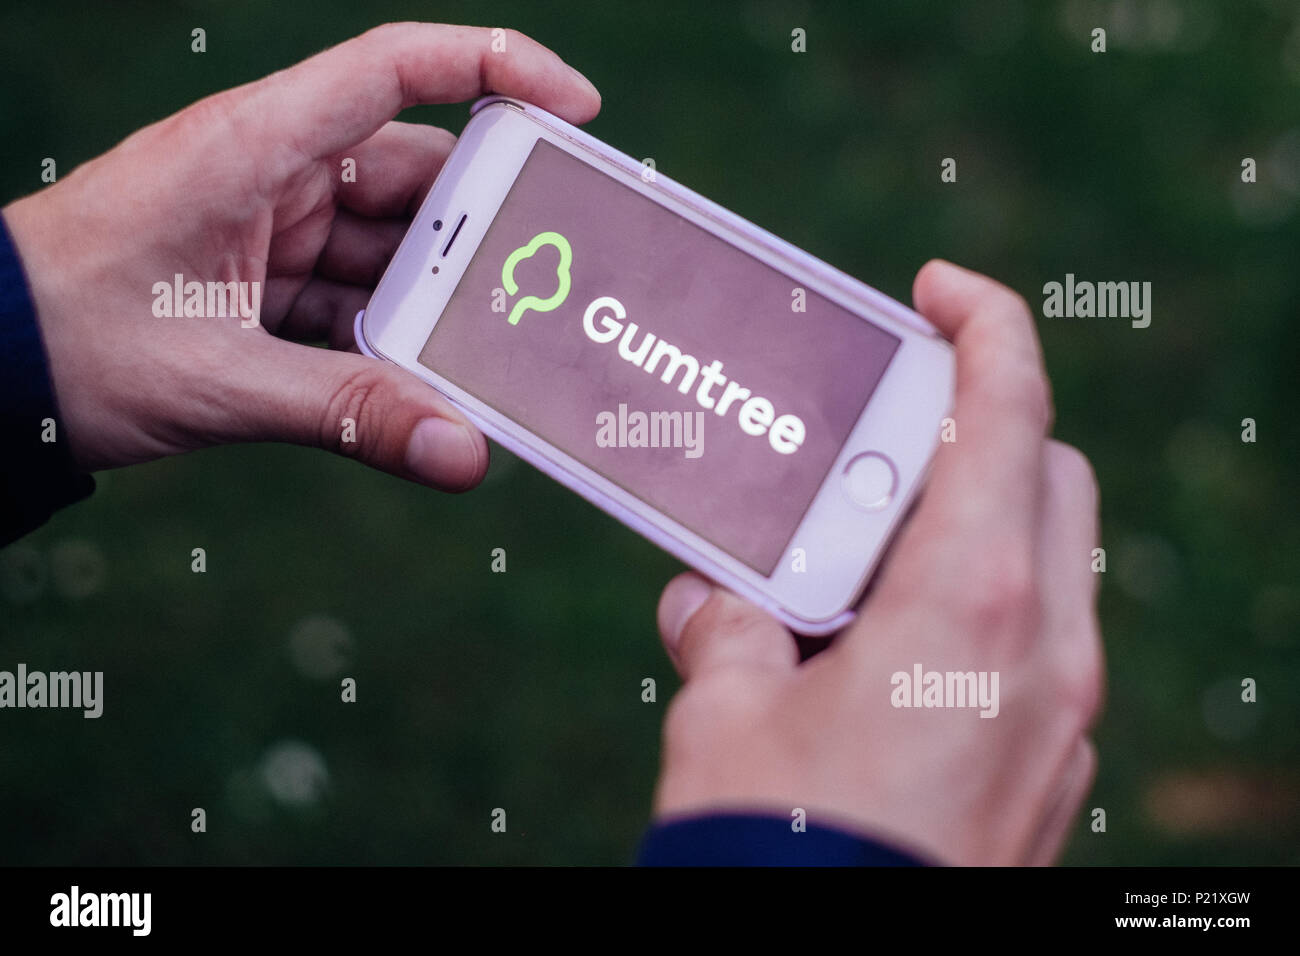 Primer plano de manos sosteniendo el iPhone con pantalla GUMTREE logotipos e iconos Foto de stock